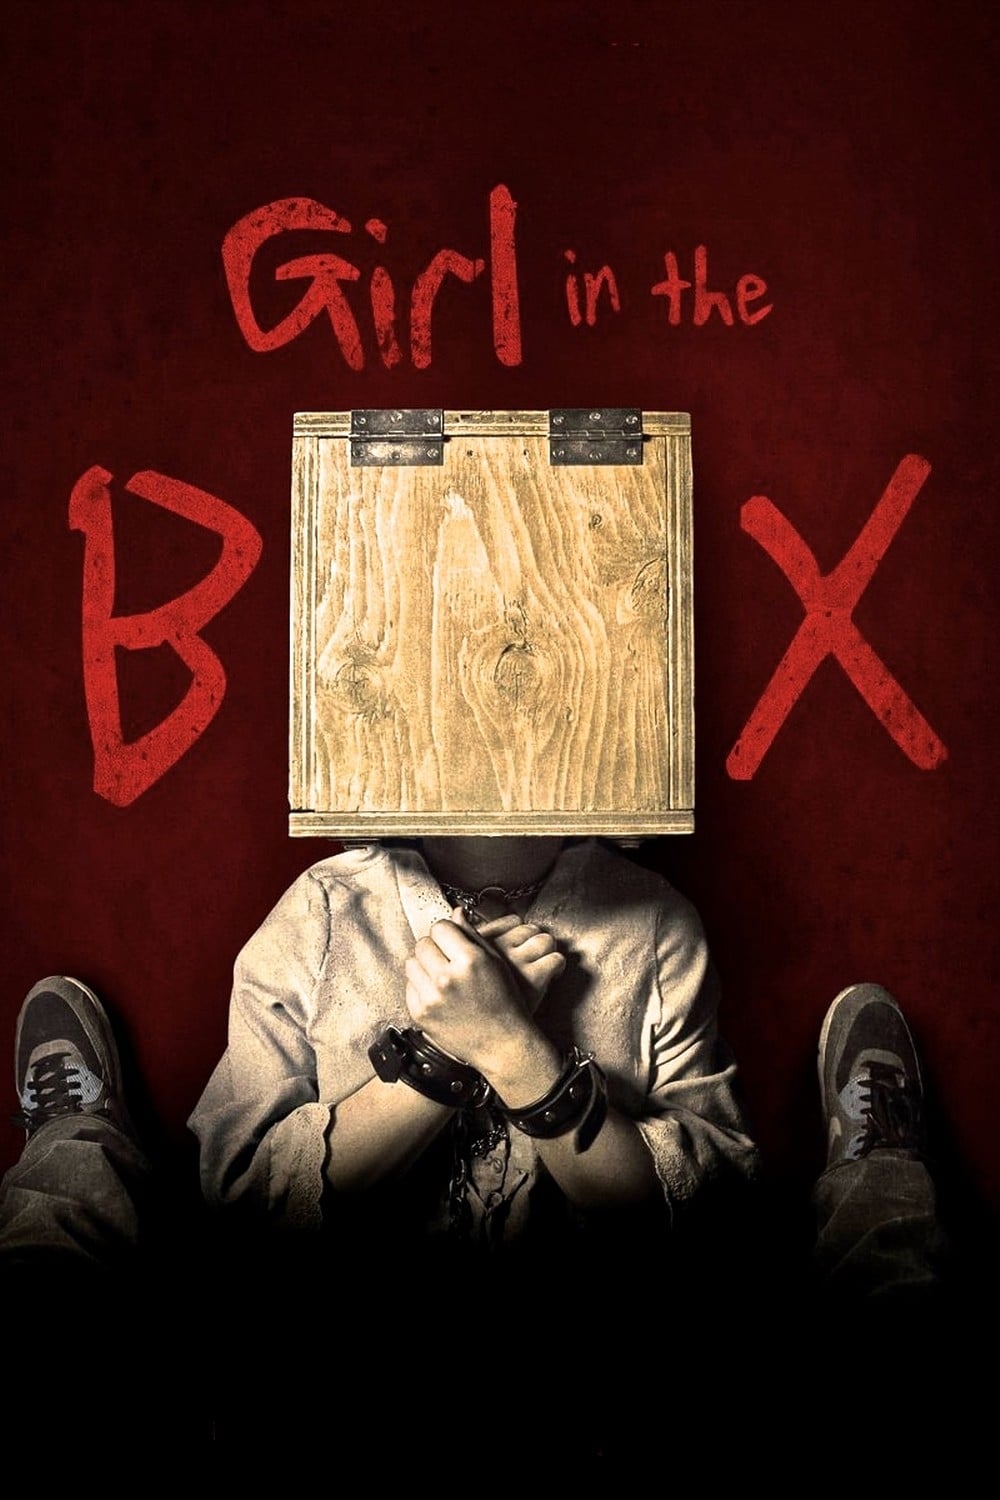 Girl in the Box (2016)